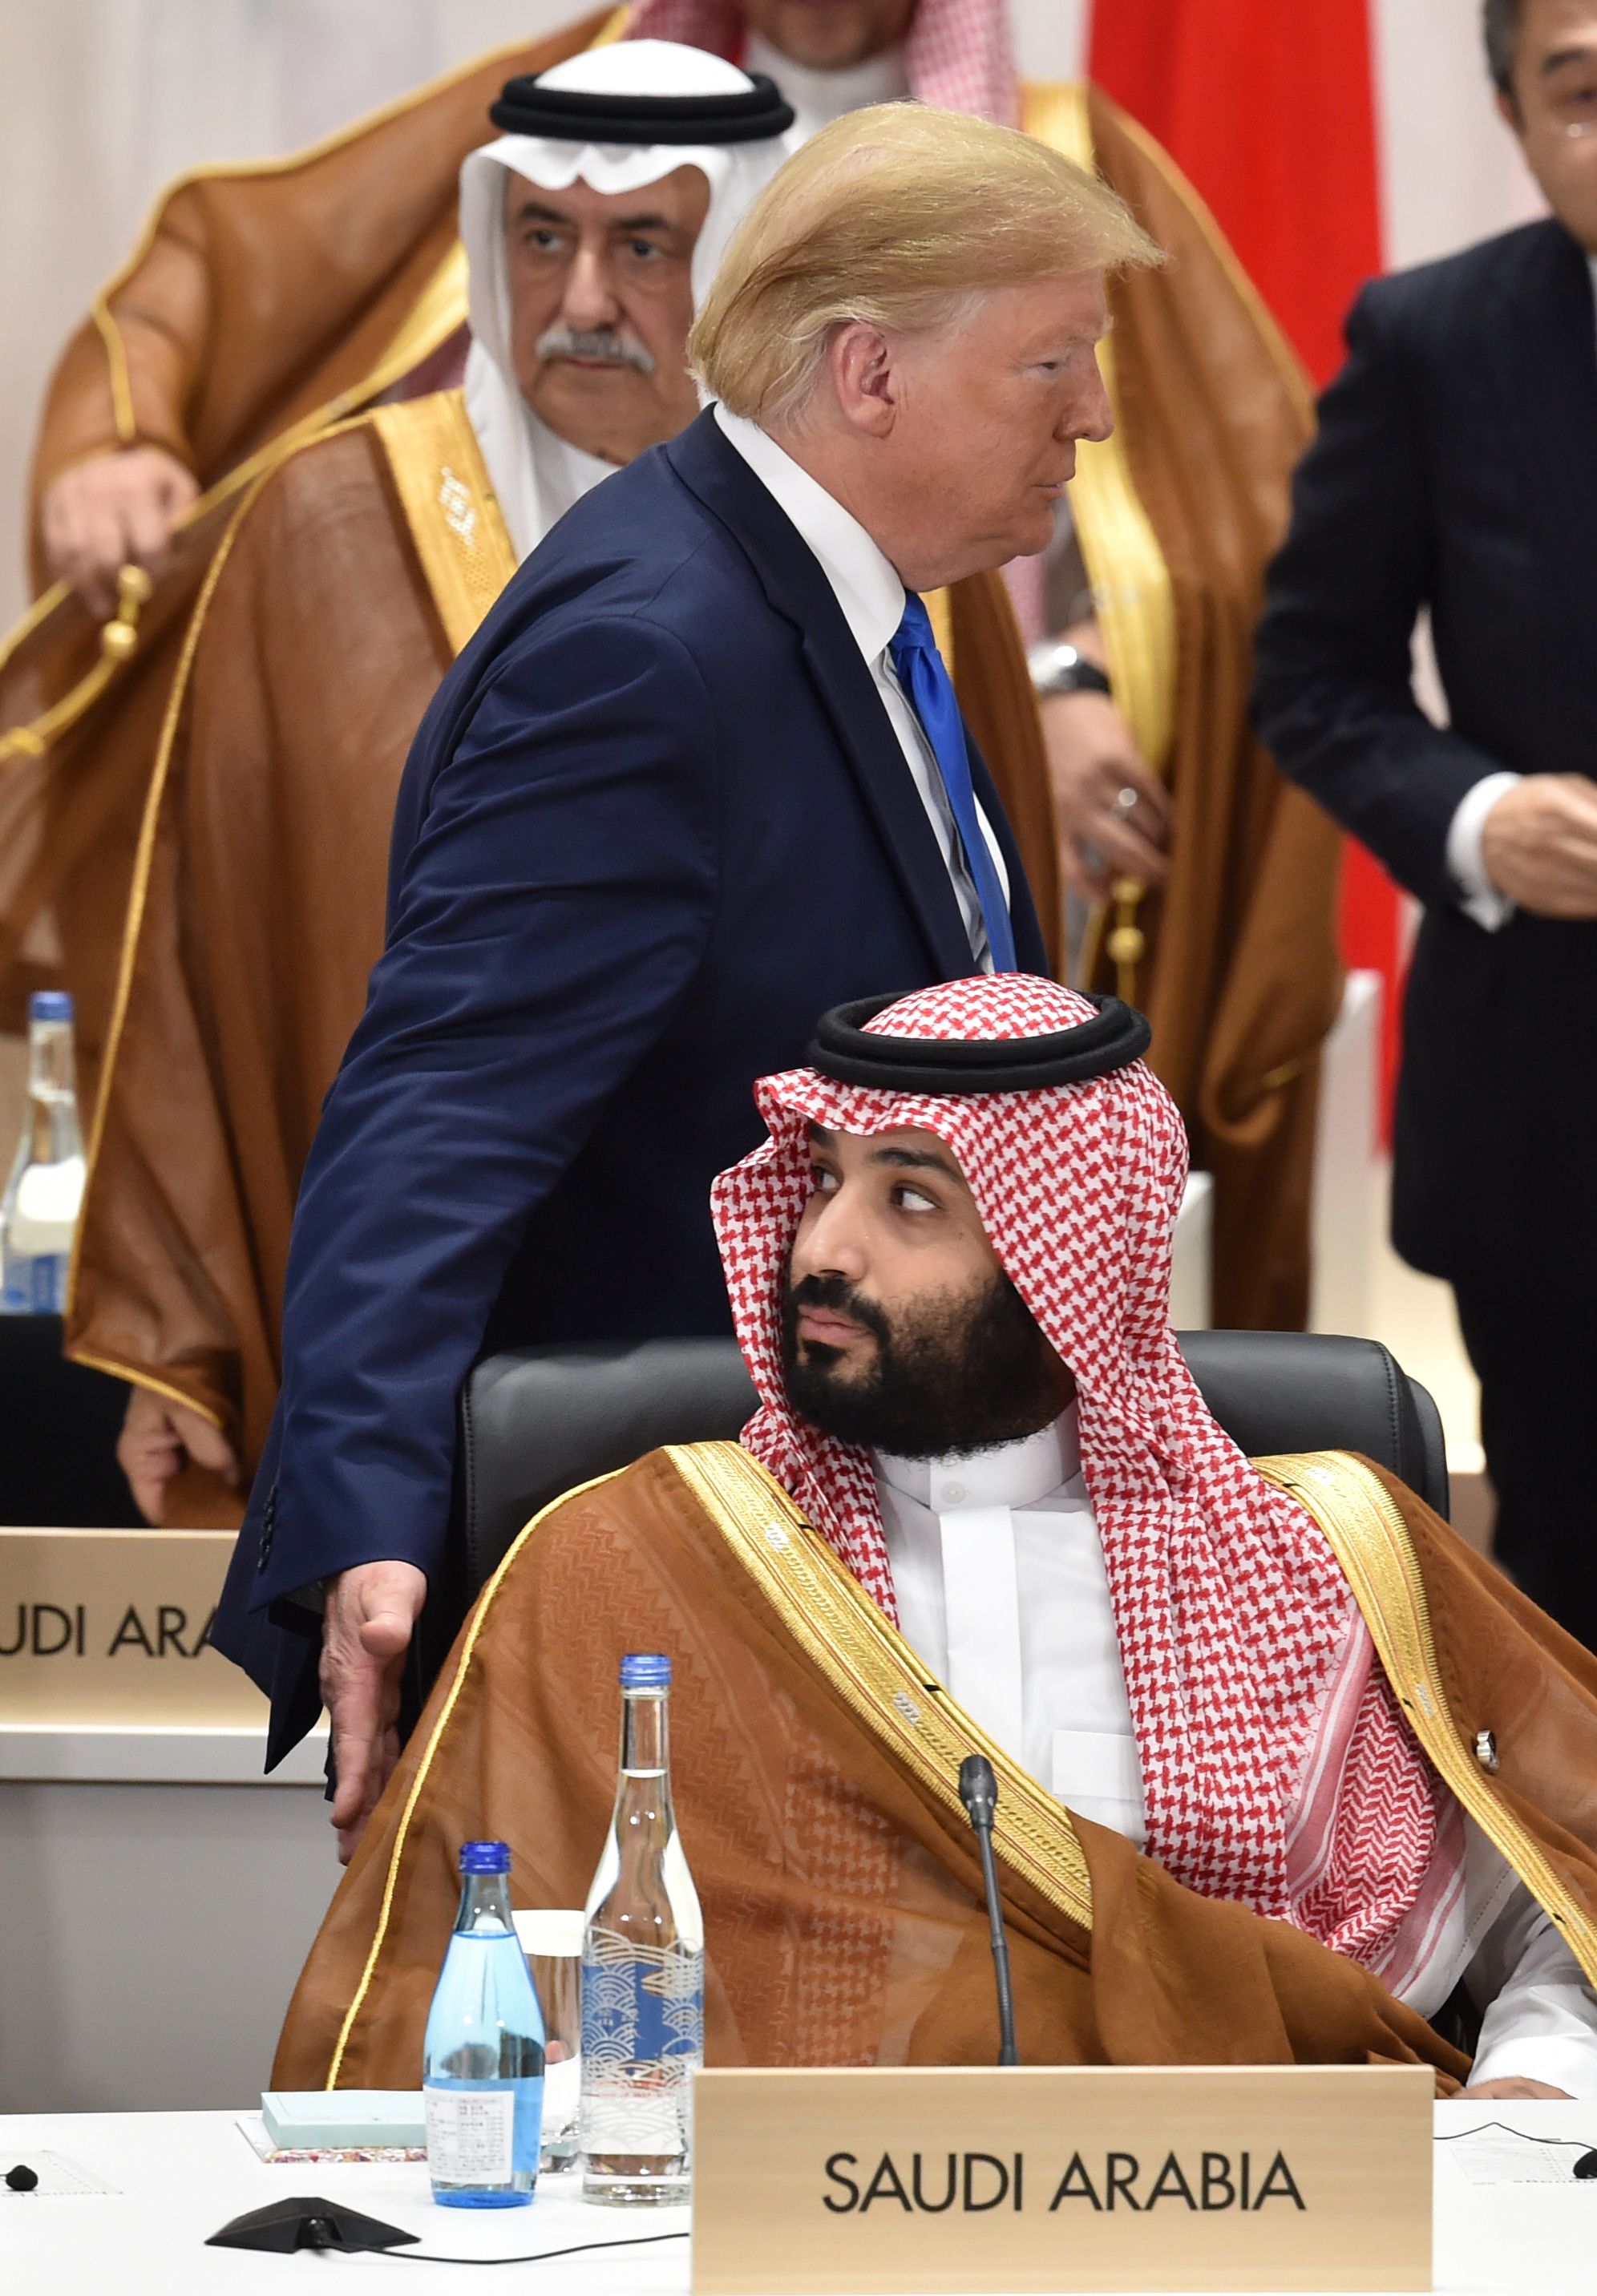 Трамп разыграл принца Саудовской Аравии на саммите G20. ФОТО